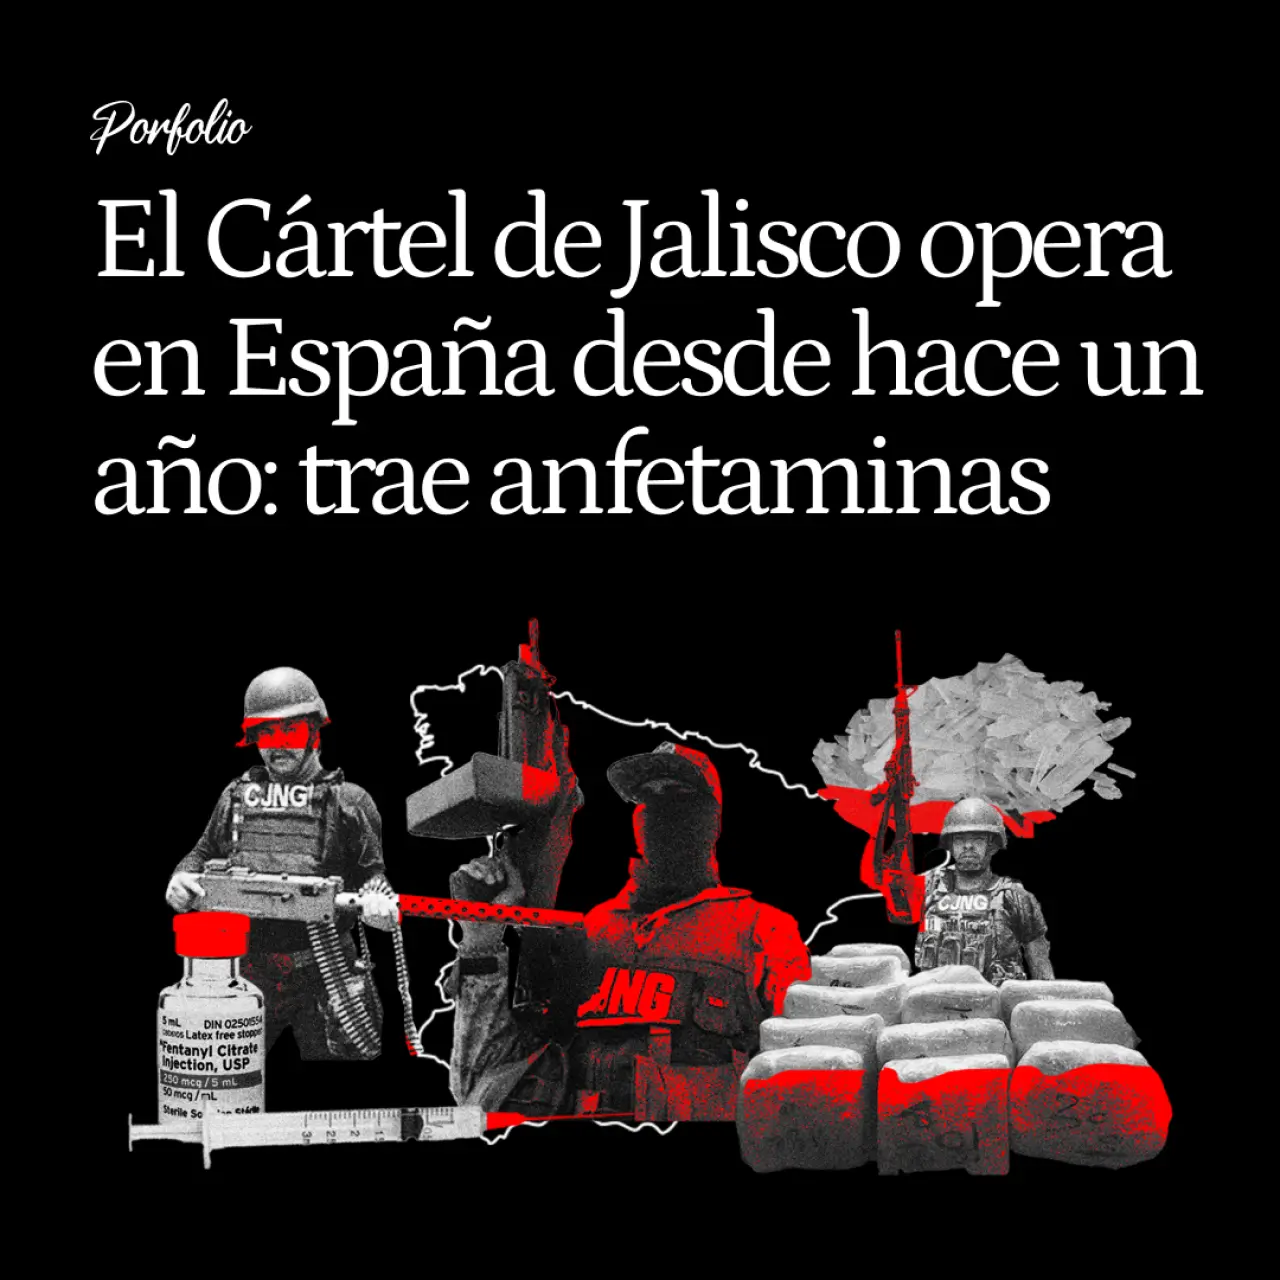 El Cártel de Jalisco opera en España desde hace un año: trae metanfetaminas de México mientras se prepara para producir fentanilo